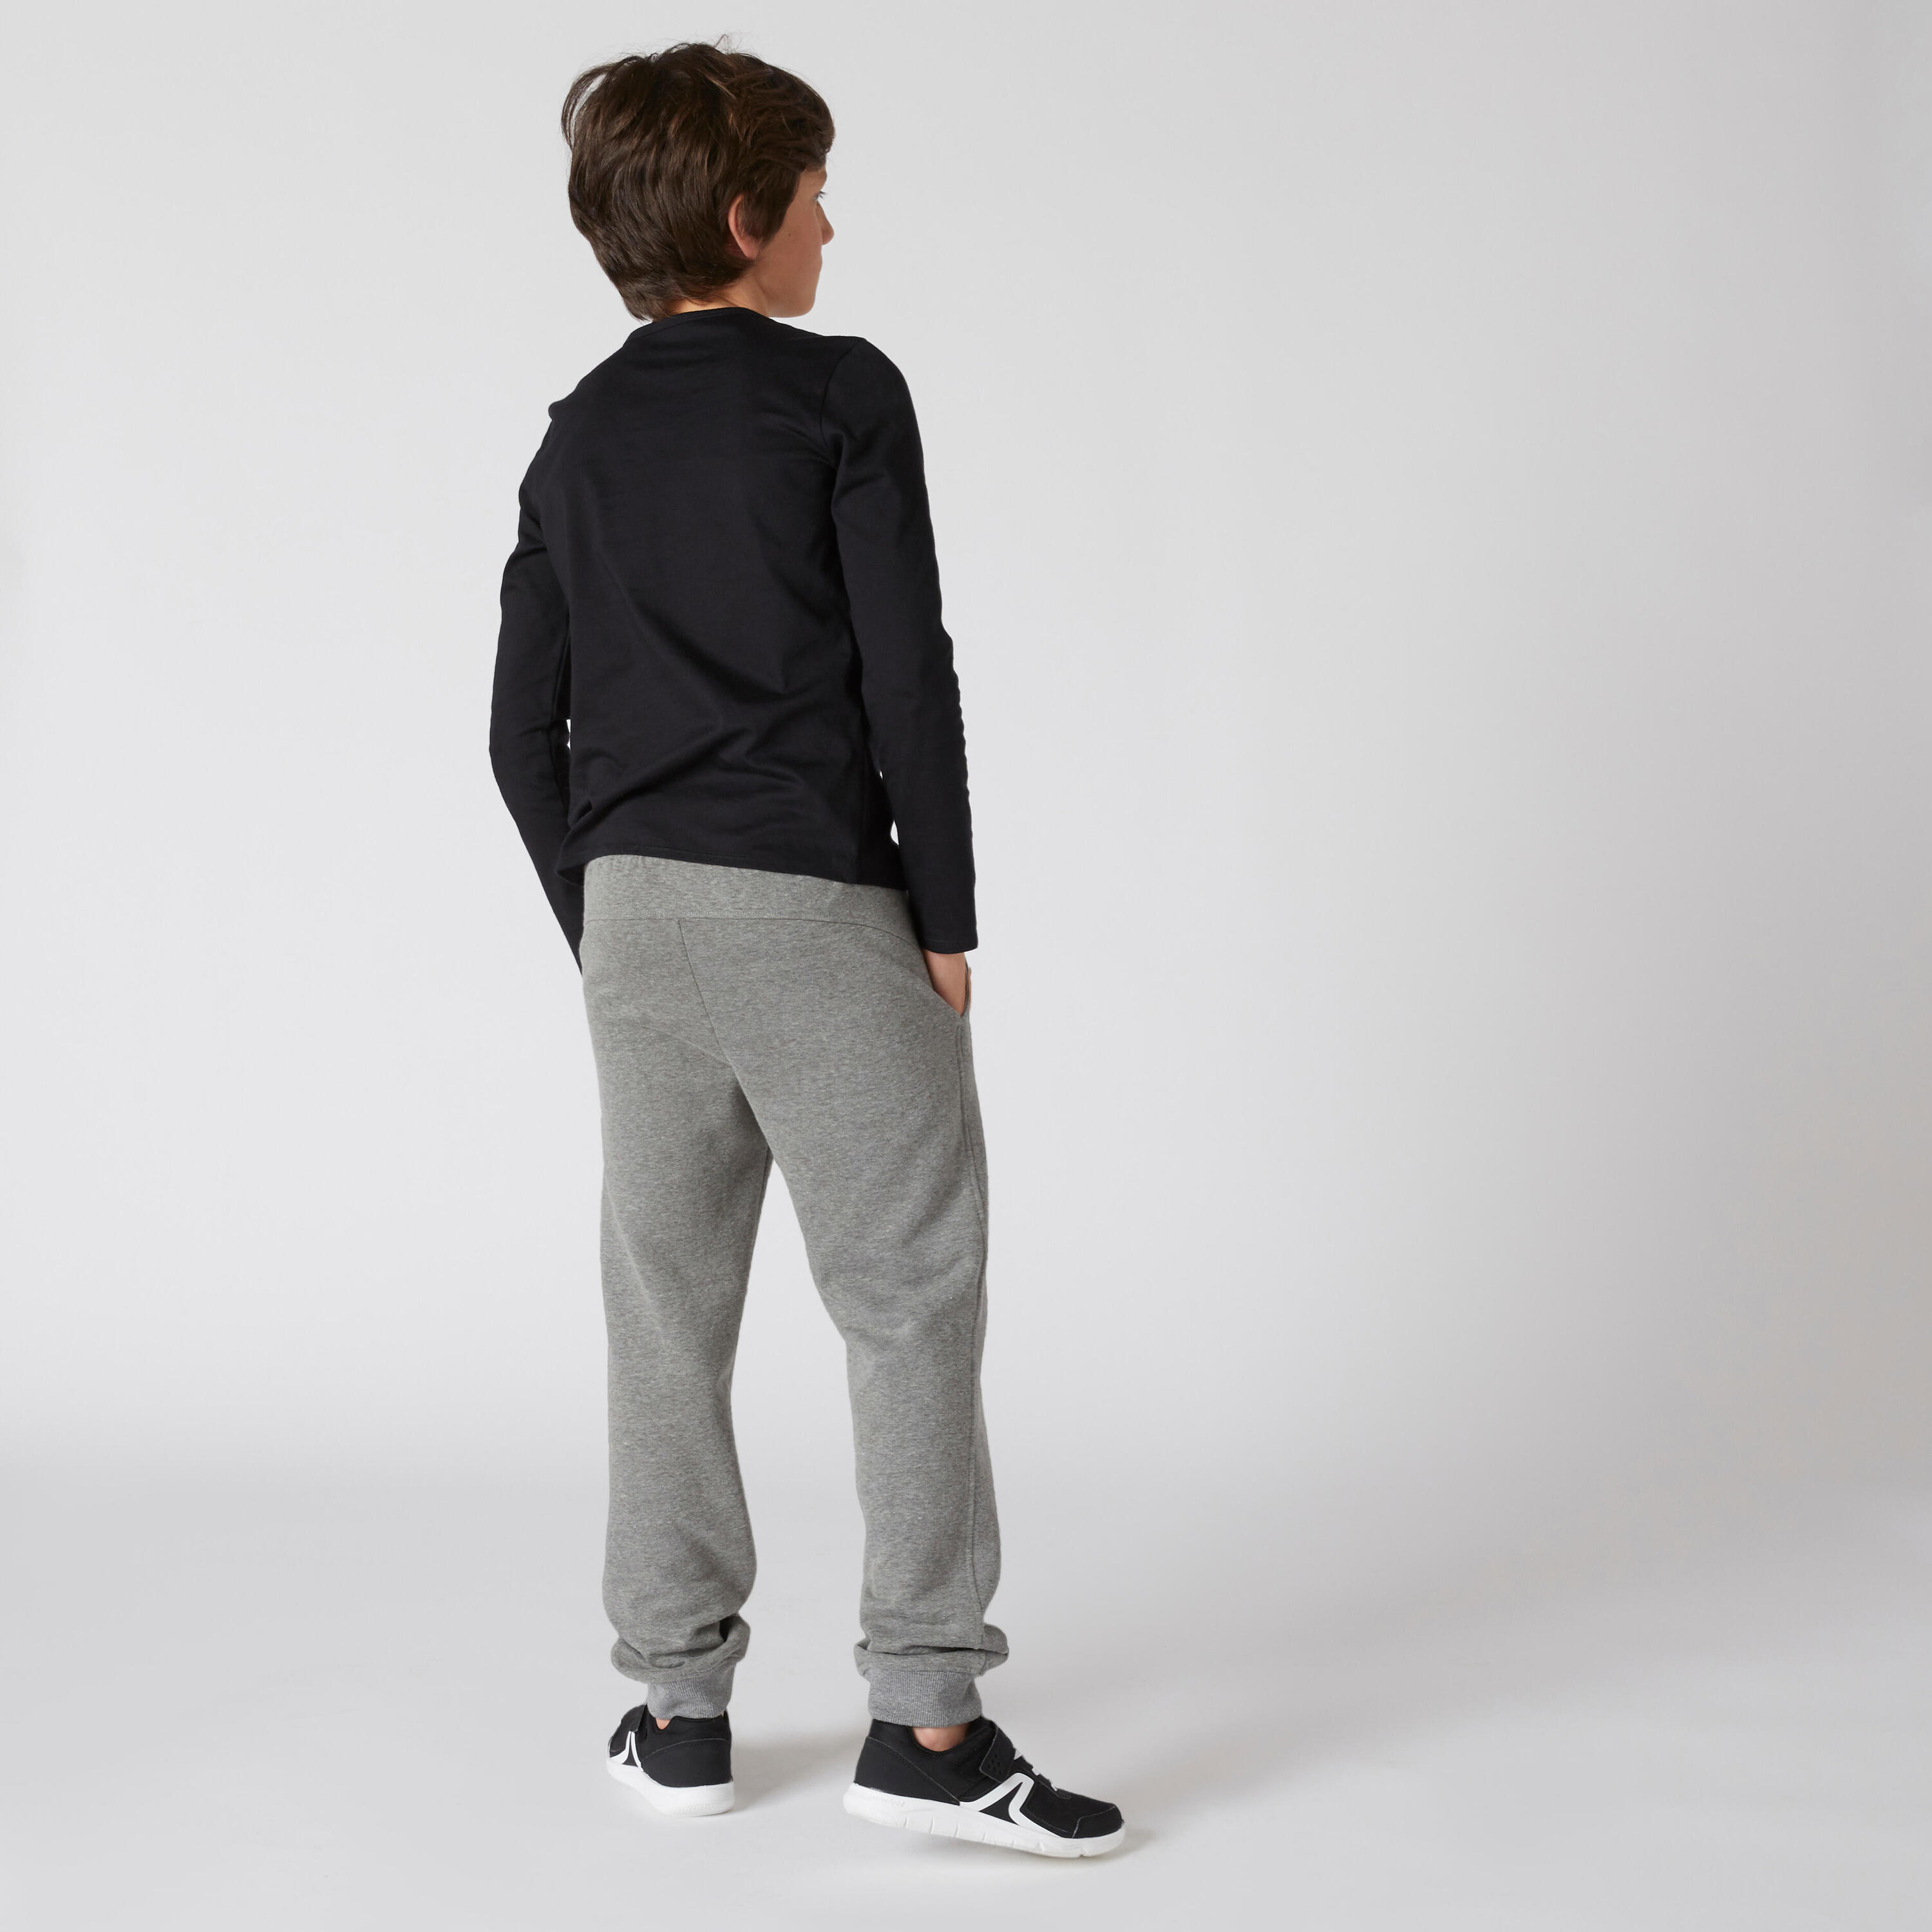 Kids' Basic Long-Sleeved T-Shirt - Black 3/3